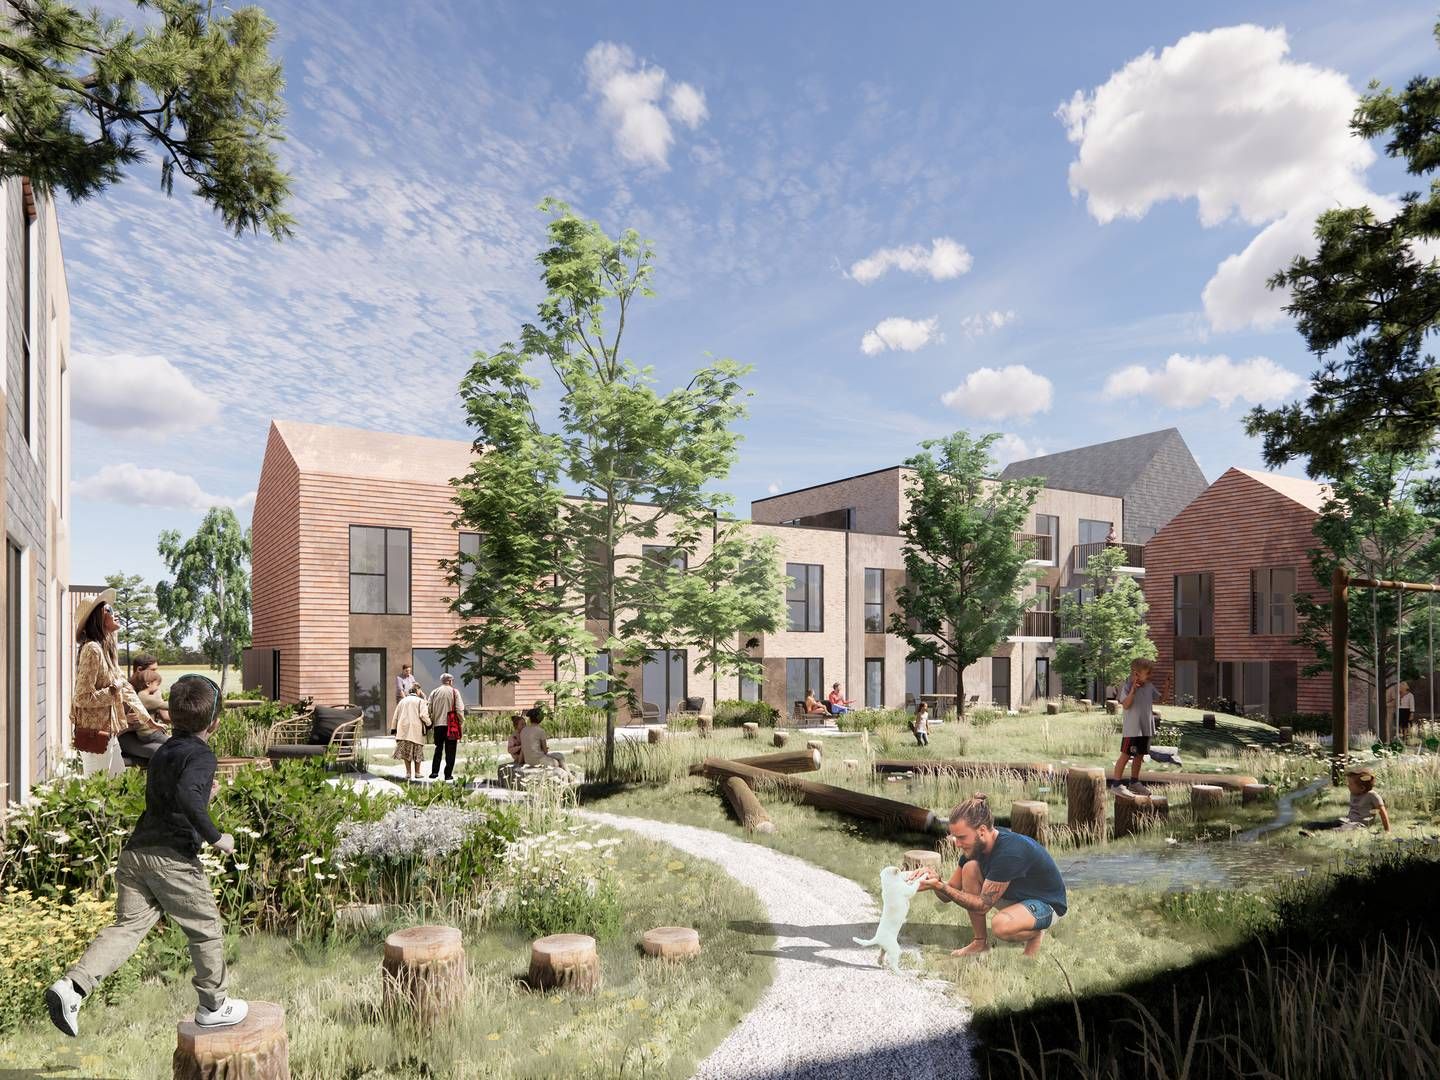 100 boliger skal udgøre en ny bydel i Lisbjerg ved Aarhus, hvor fokus bliver på bæredygtige materialer. | Foto: PR / Casa